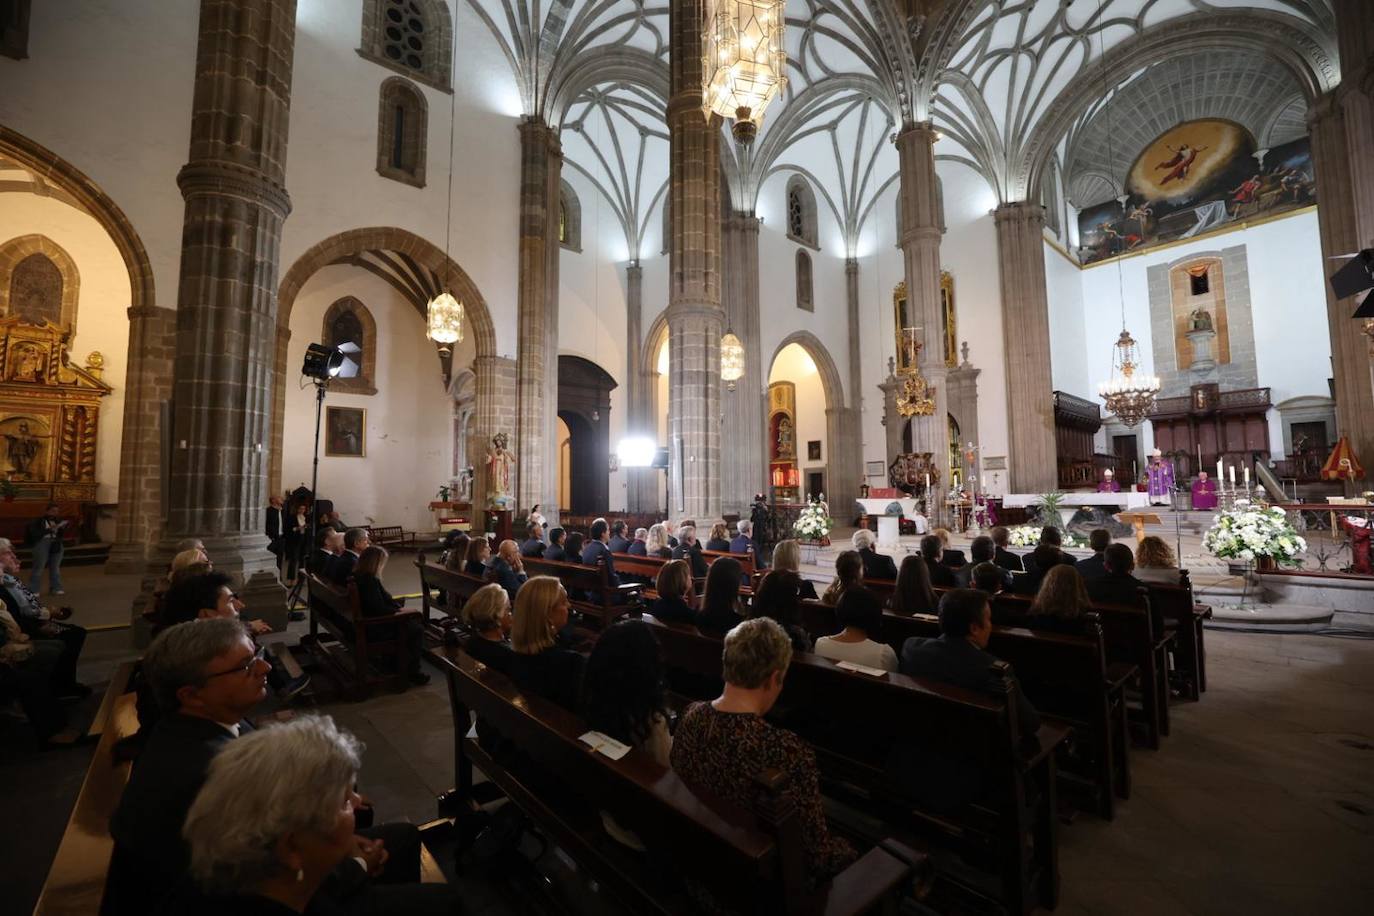 Familiares y autoridades despiden a Olarte en una emotiva misa funeral